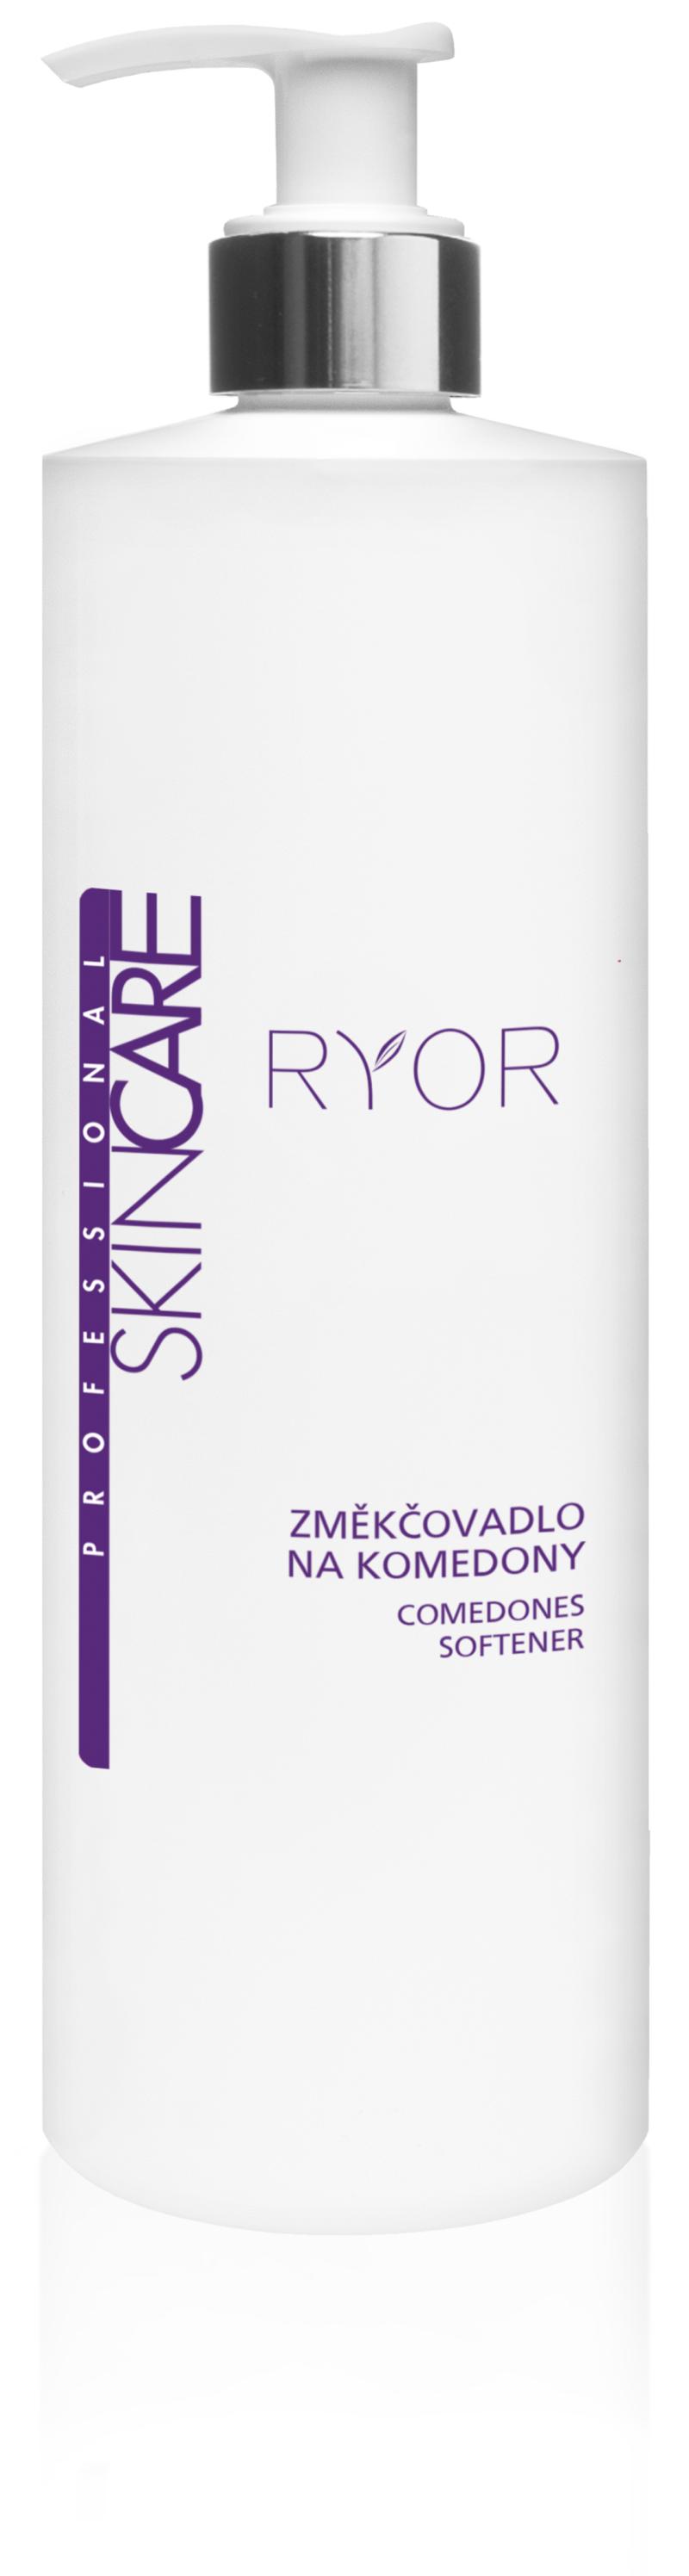 Ryor - Aufweichungsmittel für komedonen (Geschmeidigere Haut, Peeling)